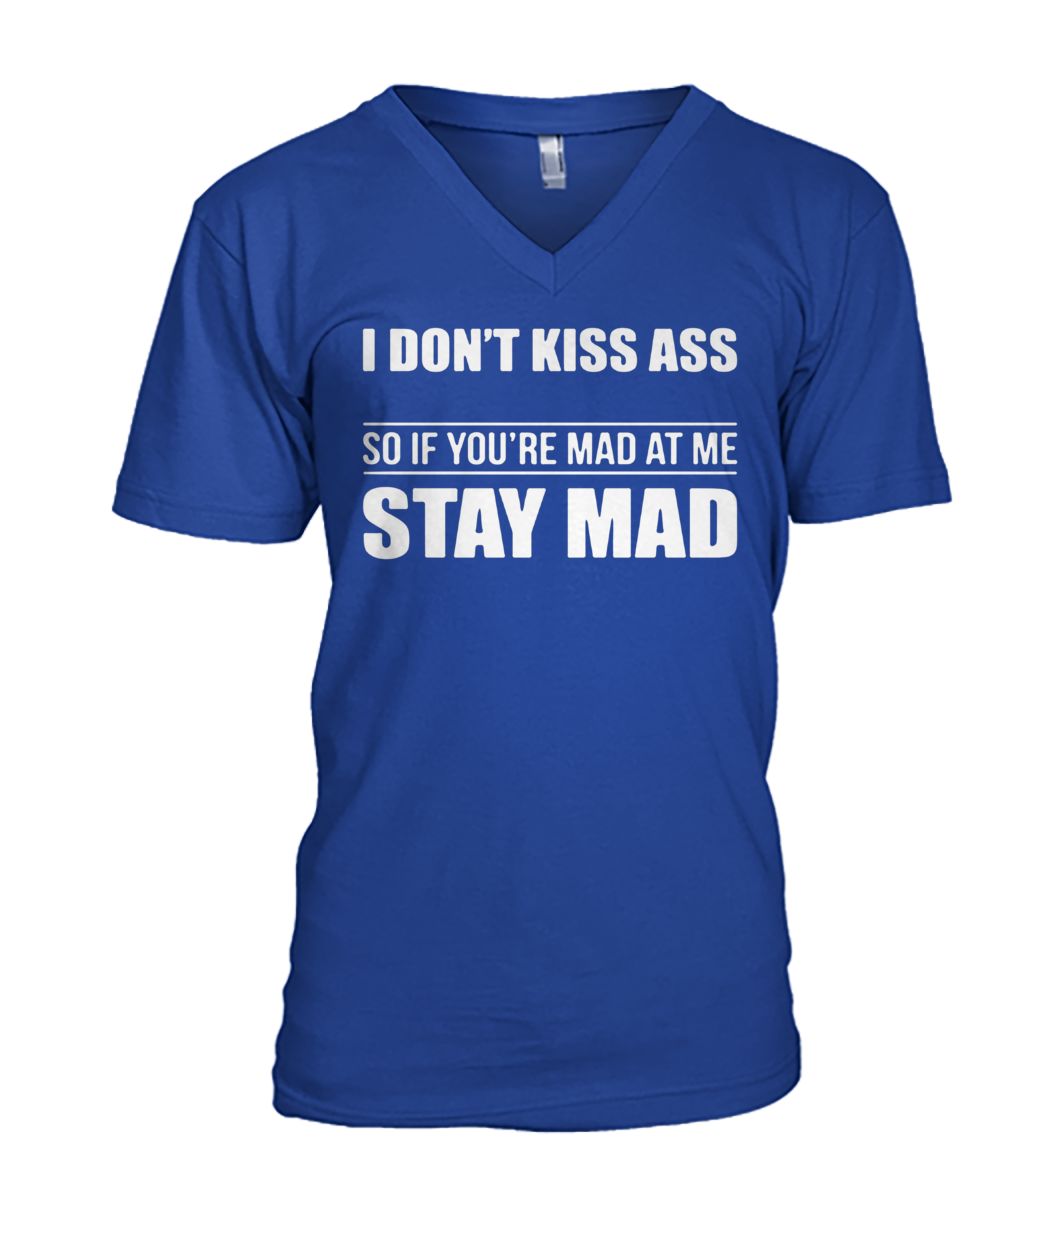 I don't kiss ass so if you're mad at me stay mad men's v-neck